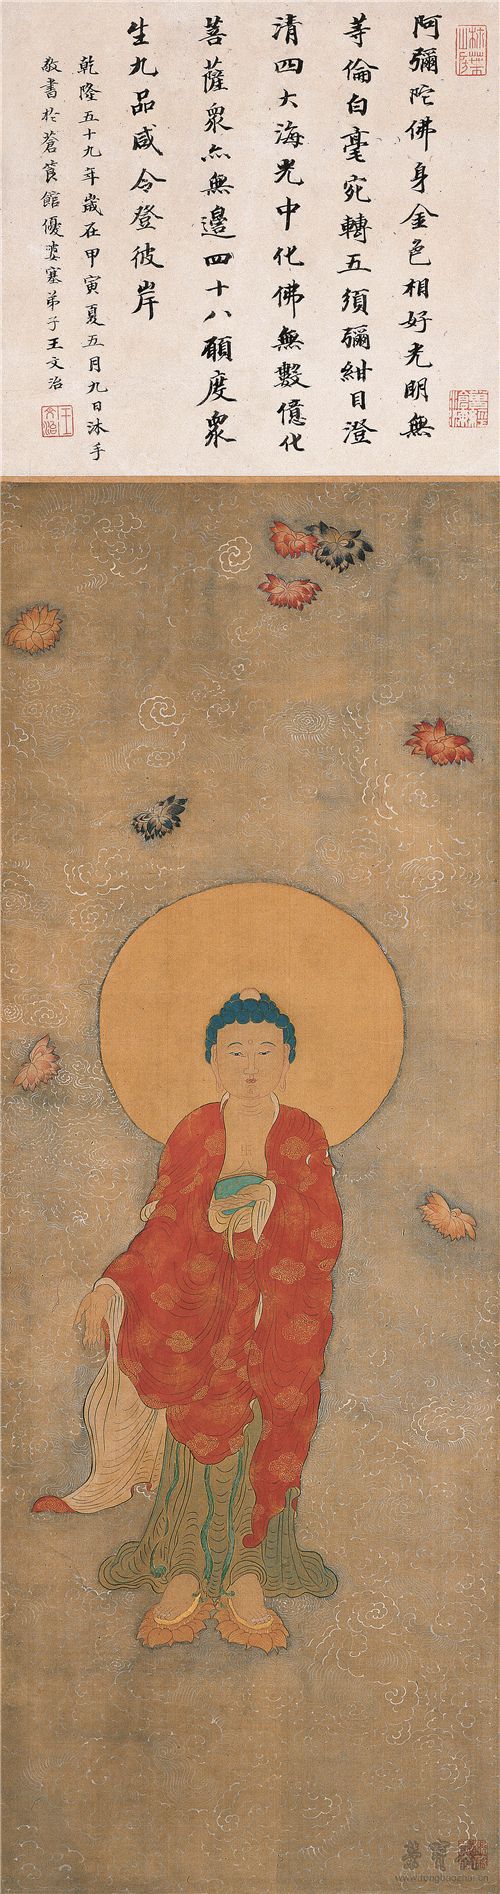 清 潘恭寿 佛像图 90.5cm×31.8cm 扬州博物馆藏